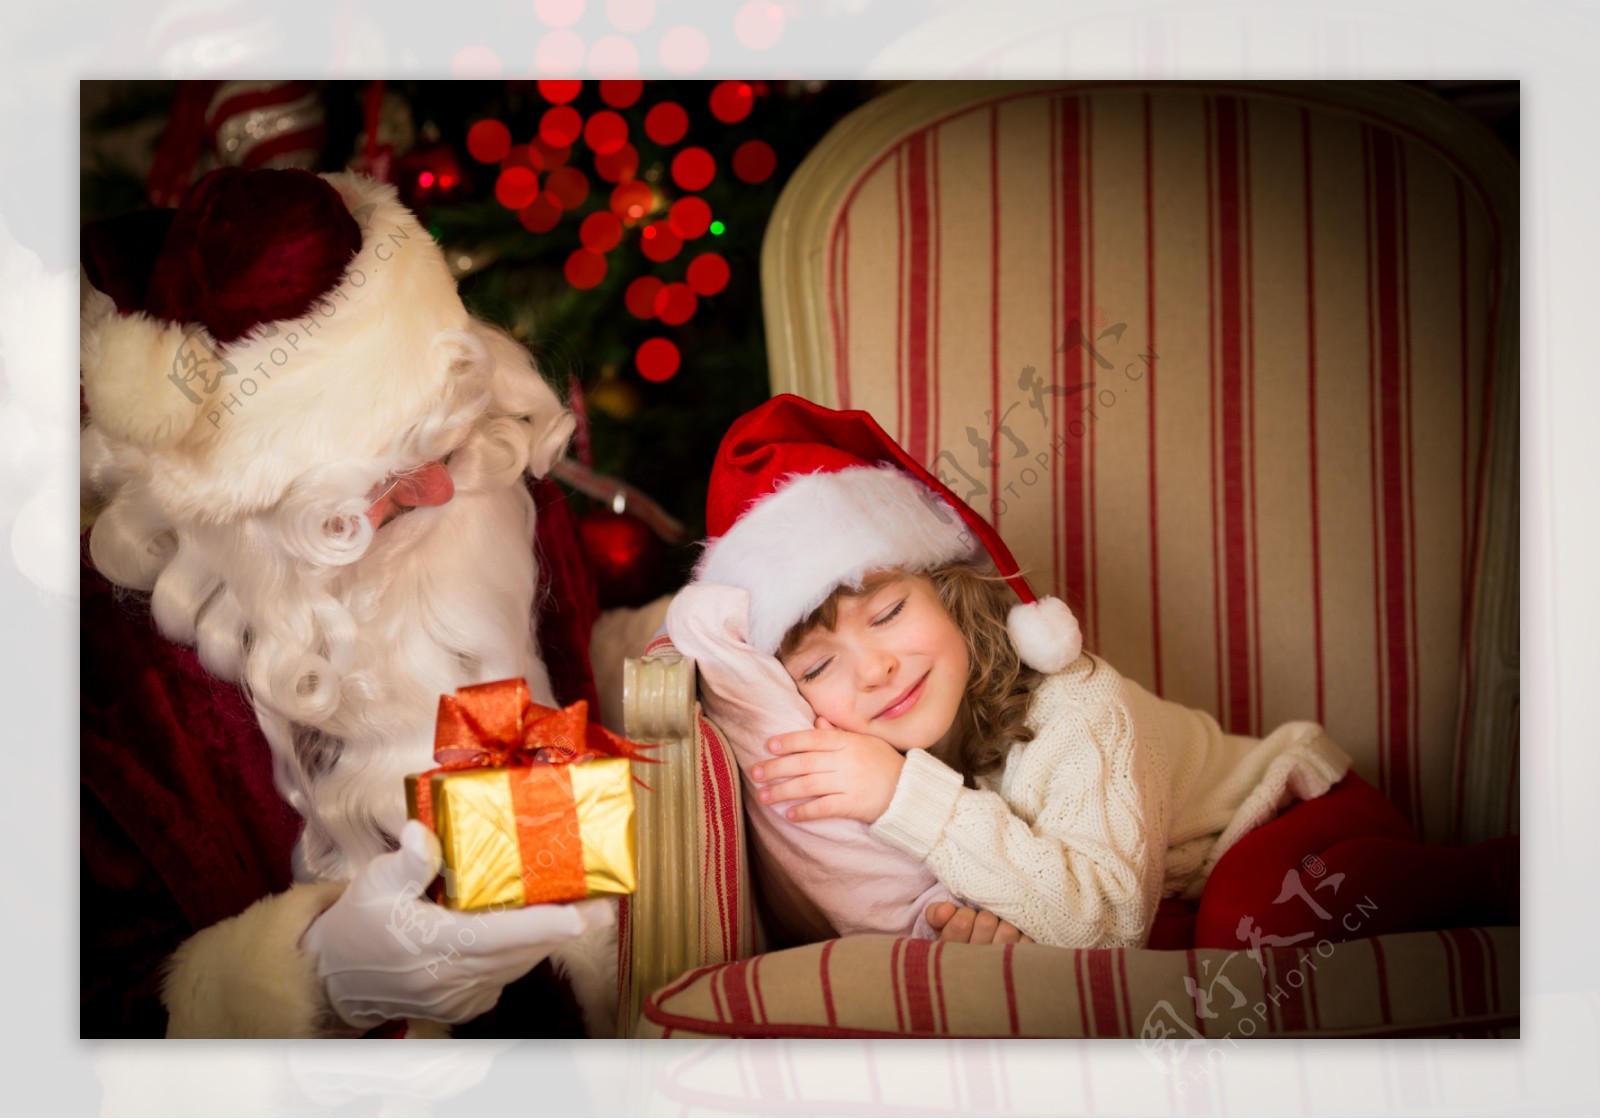 小女孩和拿着礼物的圣诞老爷爷图片